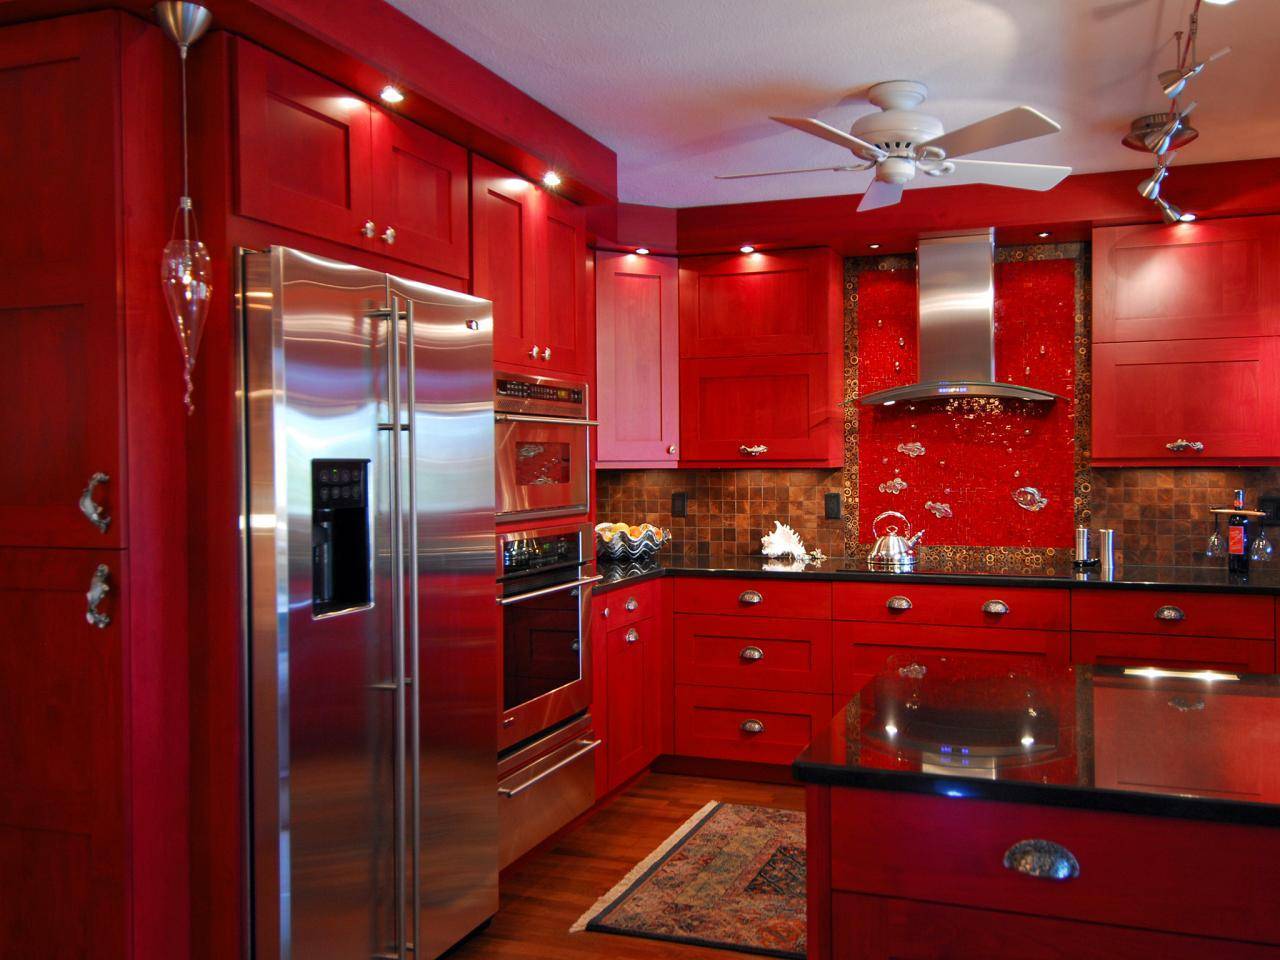 Дизайн кухни в бордовом цвете: фото реальных интерьеров